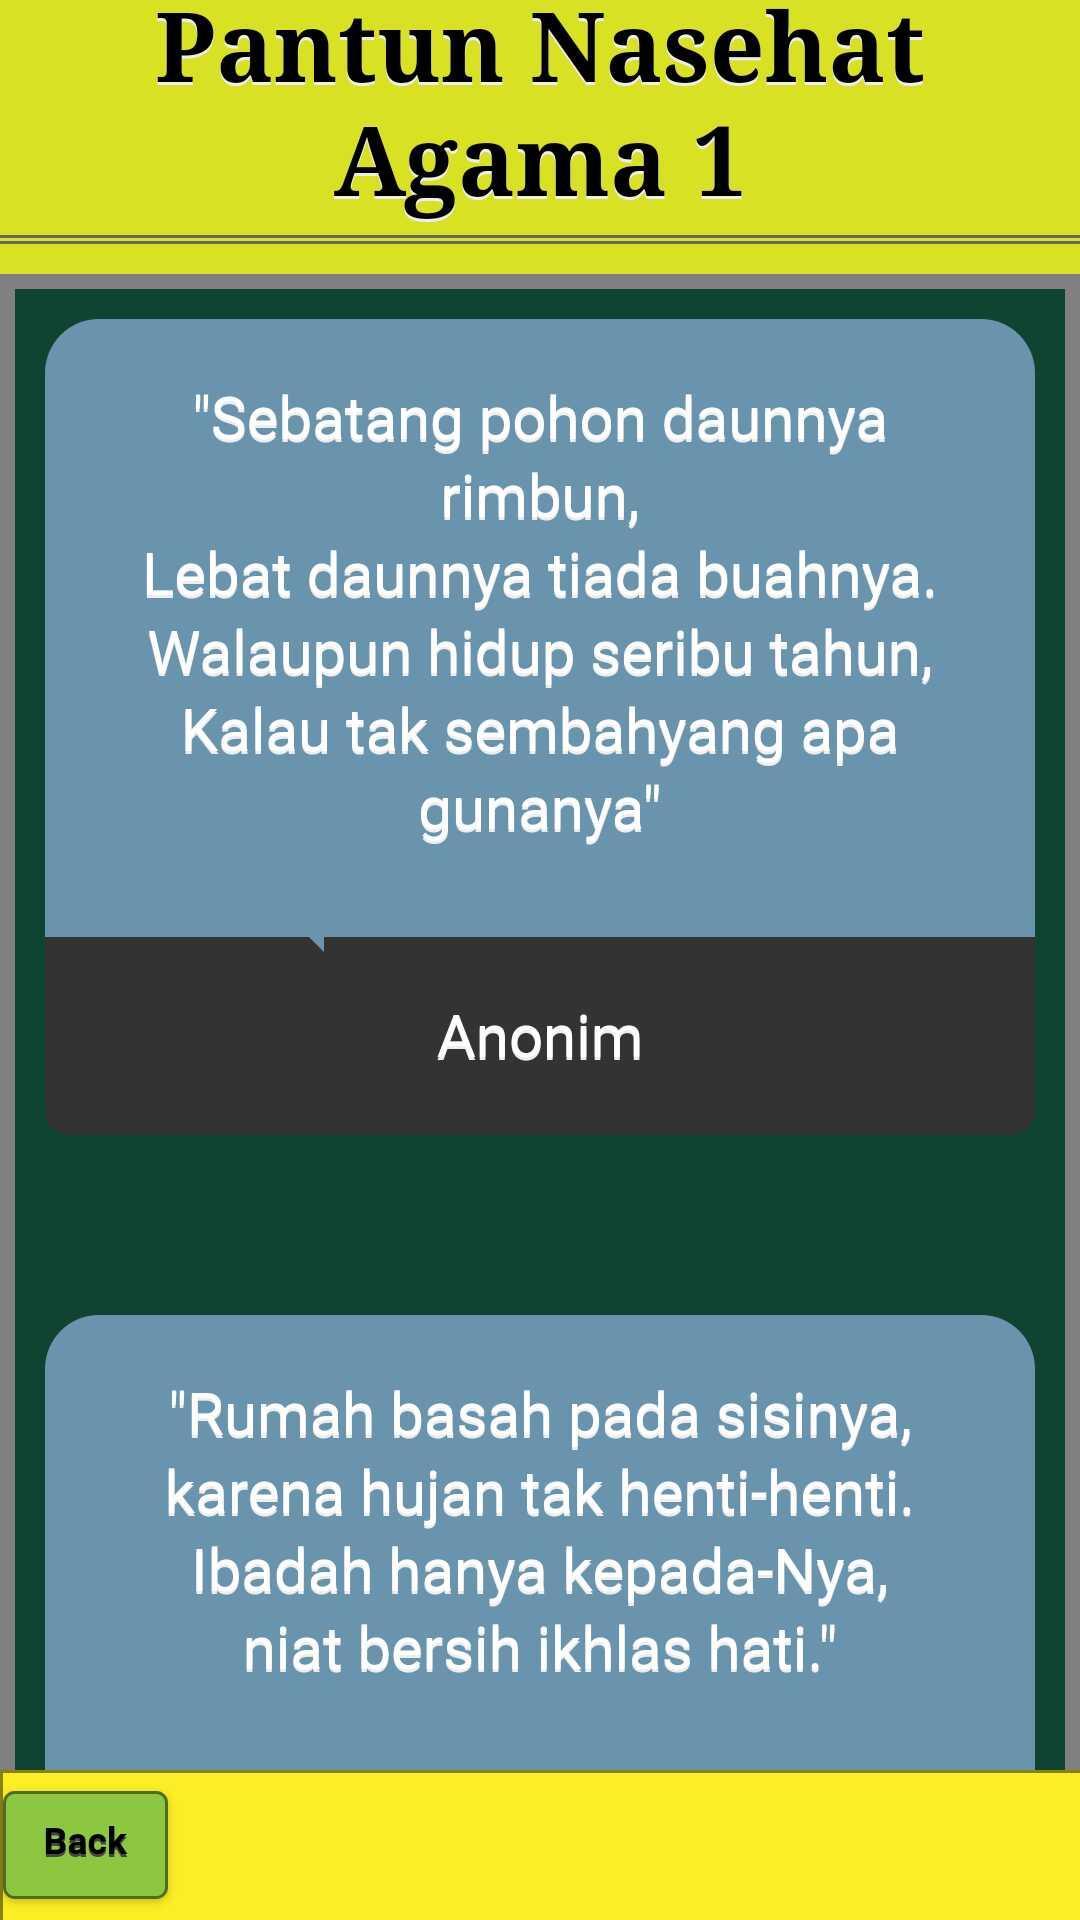 Pantun Nasehat Agama Islam Ceramah Terbaru For Android Apk Download